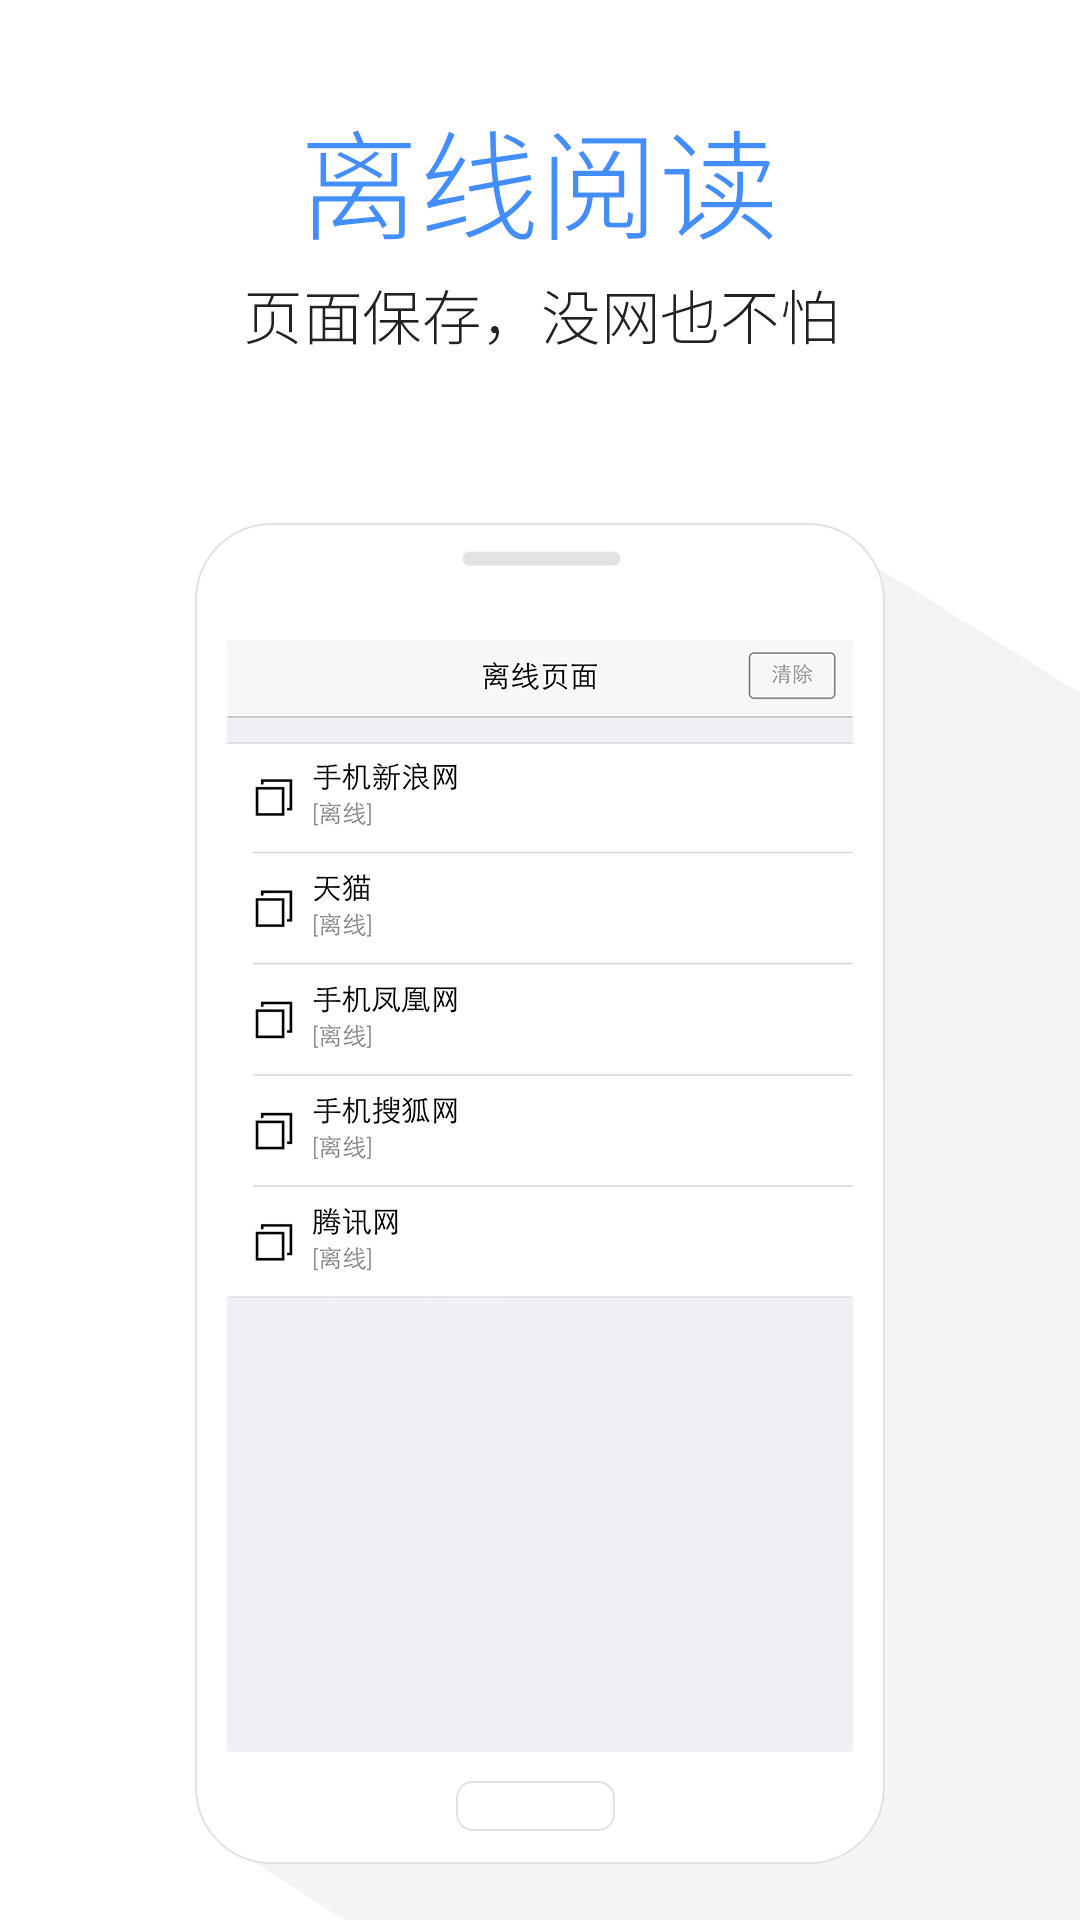 Kode浏览器中文版